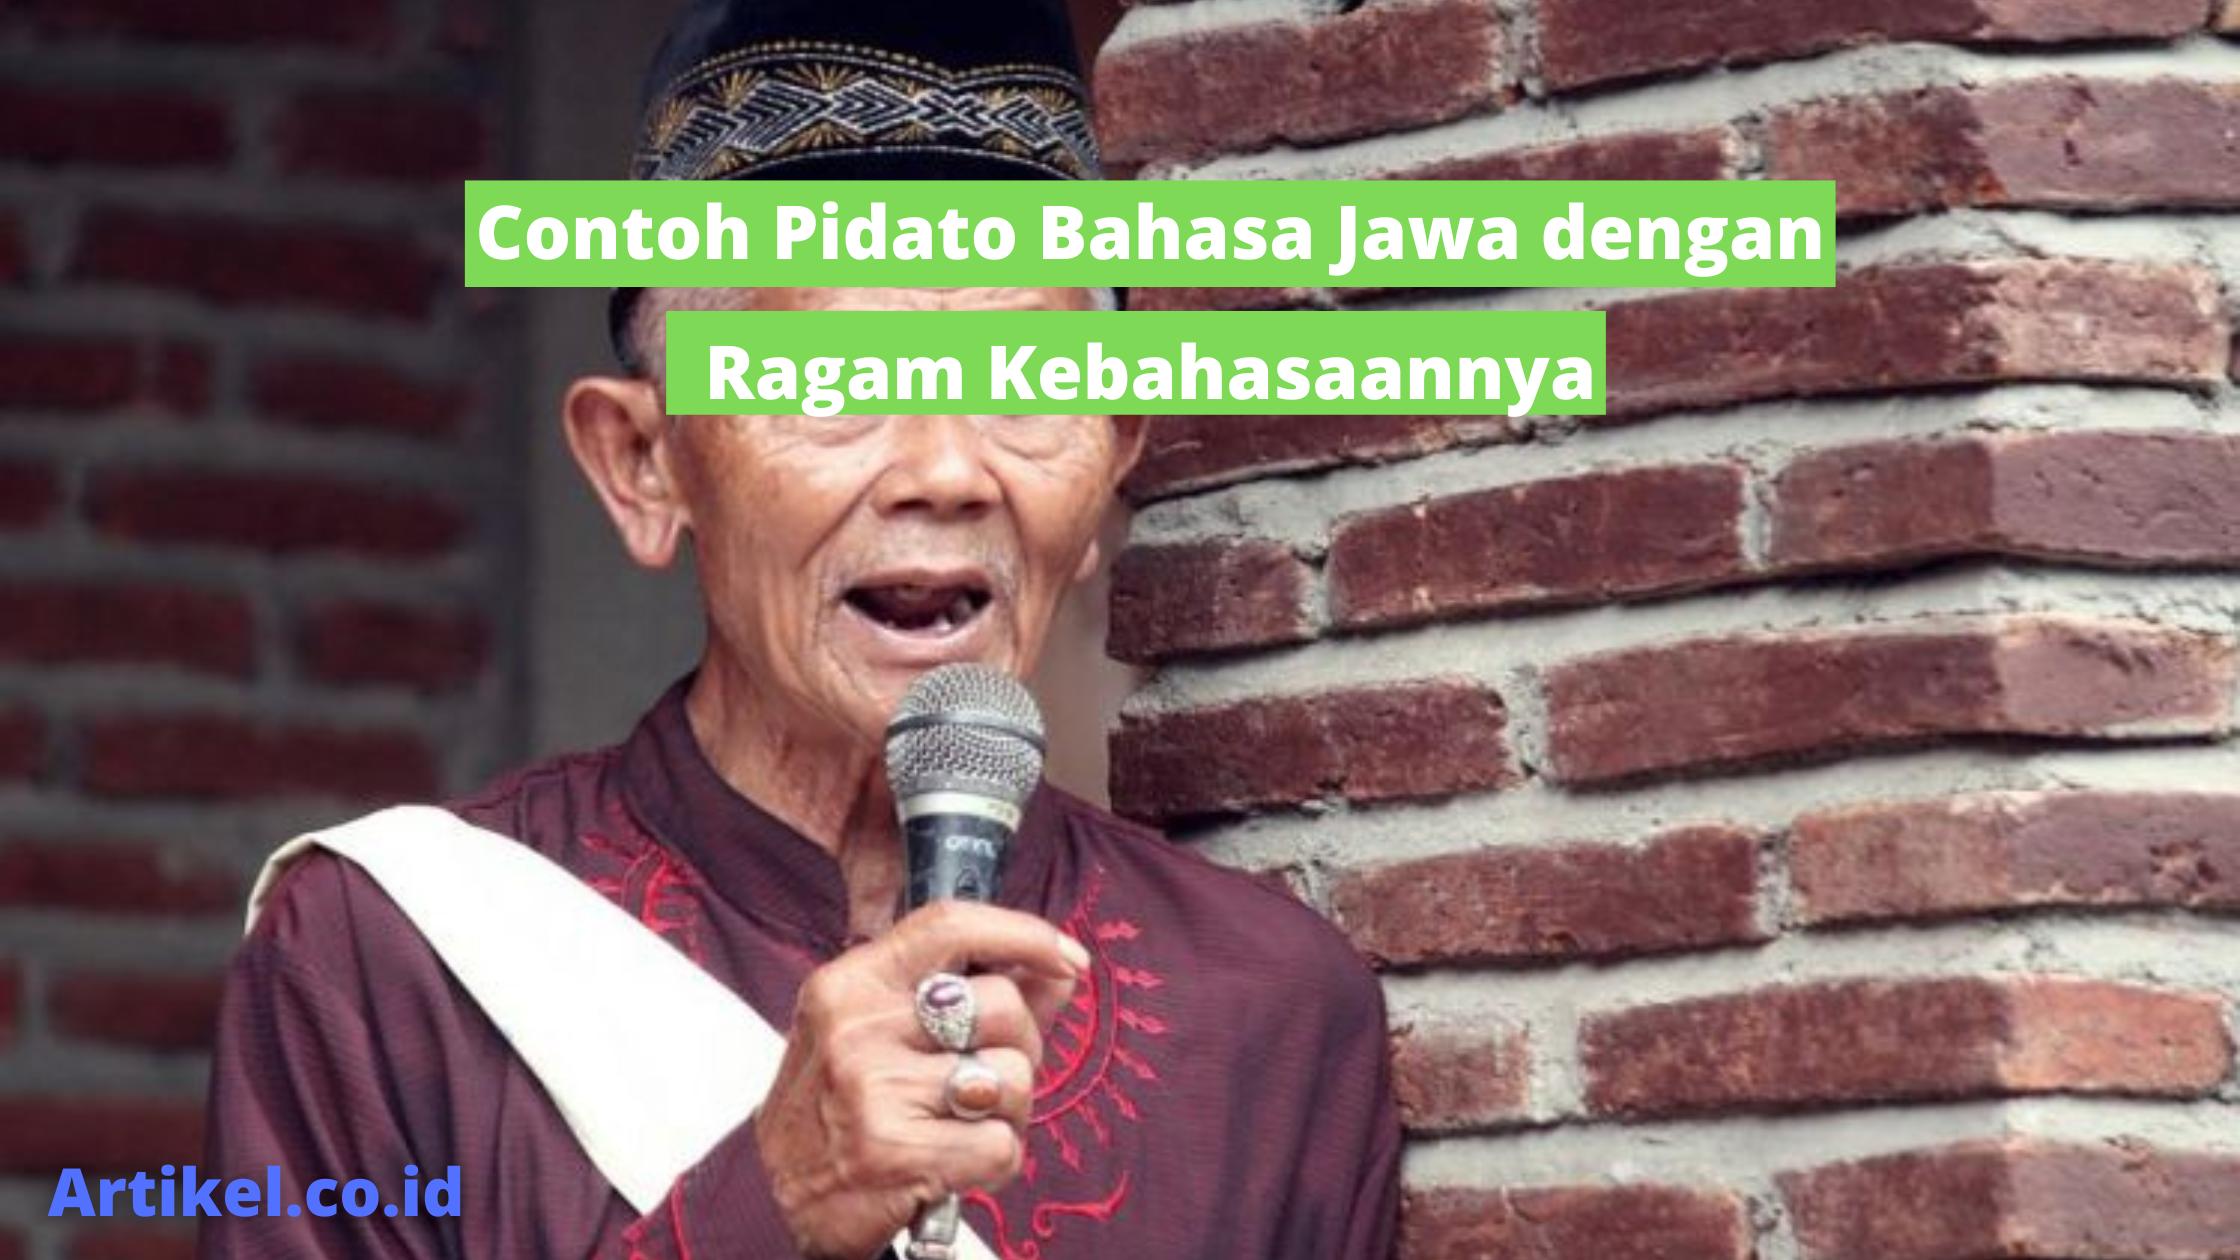 Contoh Pidato Bahasa Jawa dengan Ragam Kebahasaannya